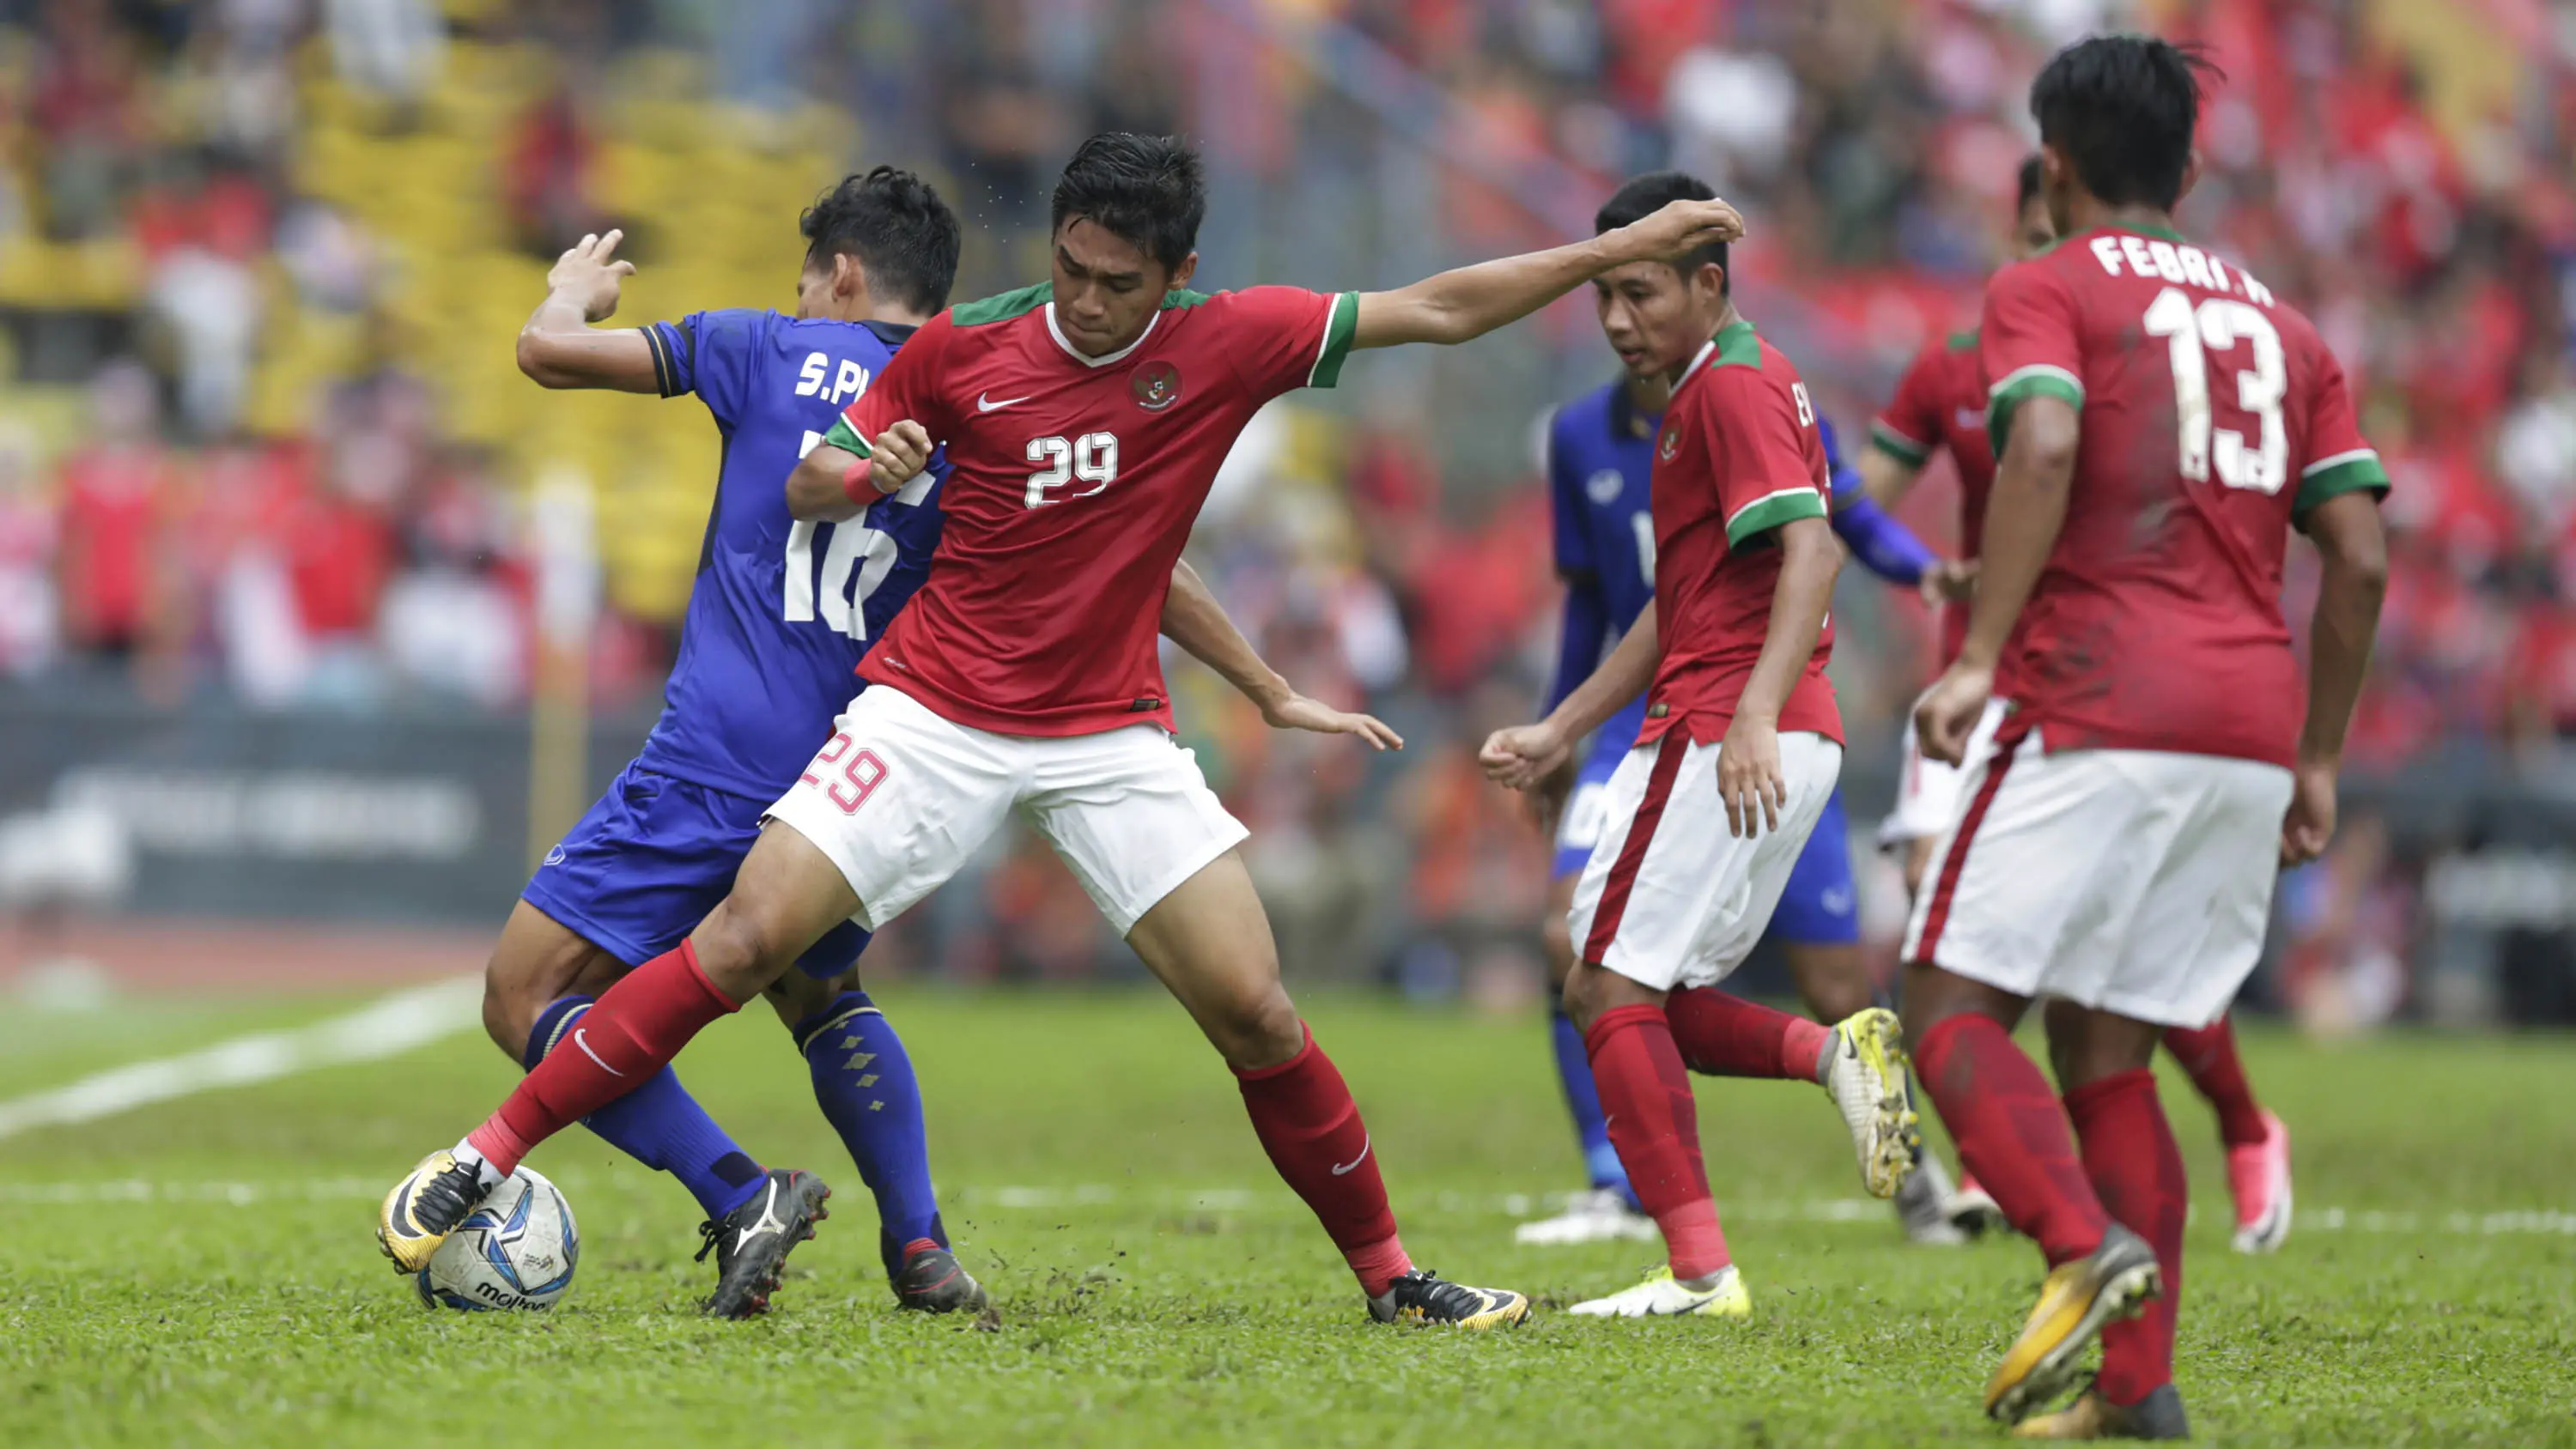 Timnas Indonesia U-22 bermain imbang 1-1 saat meladeni Thailand pada laga perdana Grup B SEA Games 2017 di Stadion Shah Alam, Selangor, Selasa (15/8/2017). (Bola.com/Vitalis Yogi Trisna)